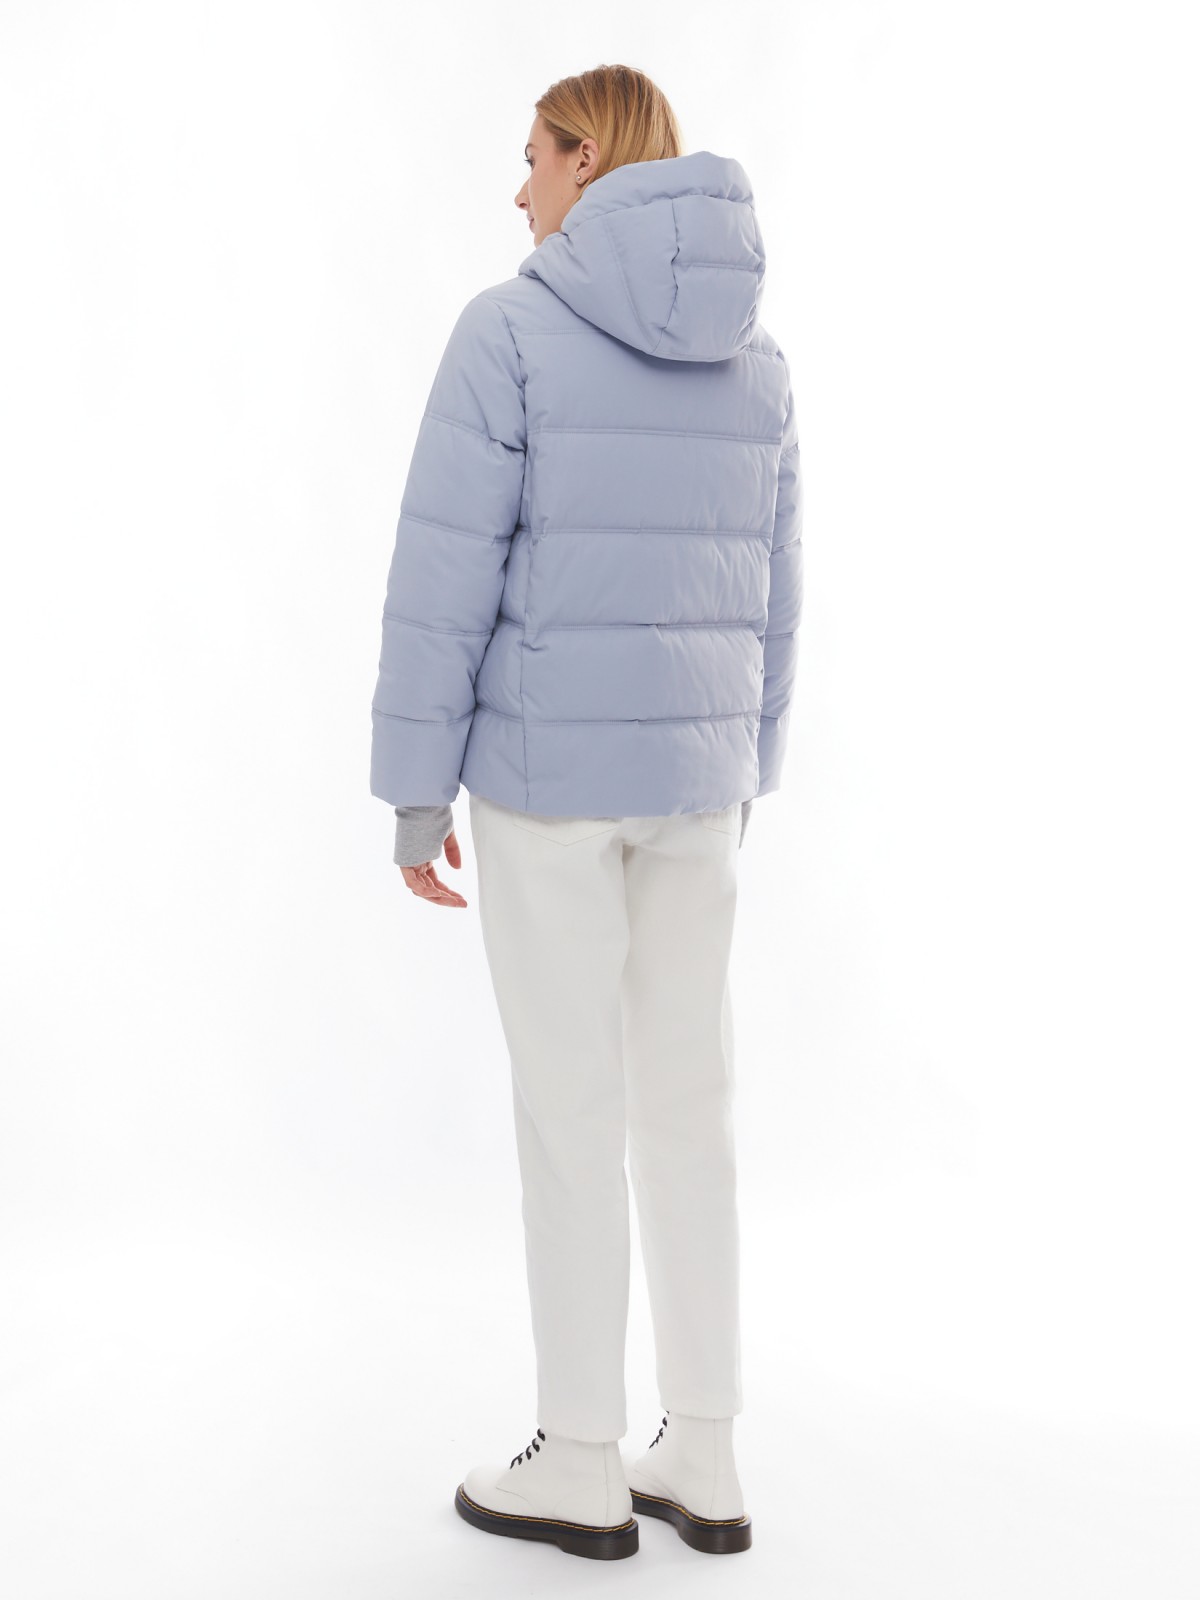 Утеплённая стёганая куртка укороченного фасона с капюшоном zolla 024125102064, цвет светло-голубой, размер XS - фото 6